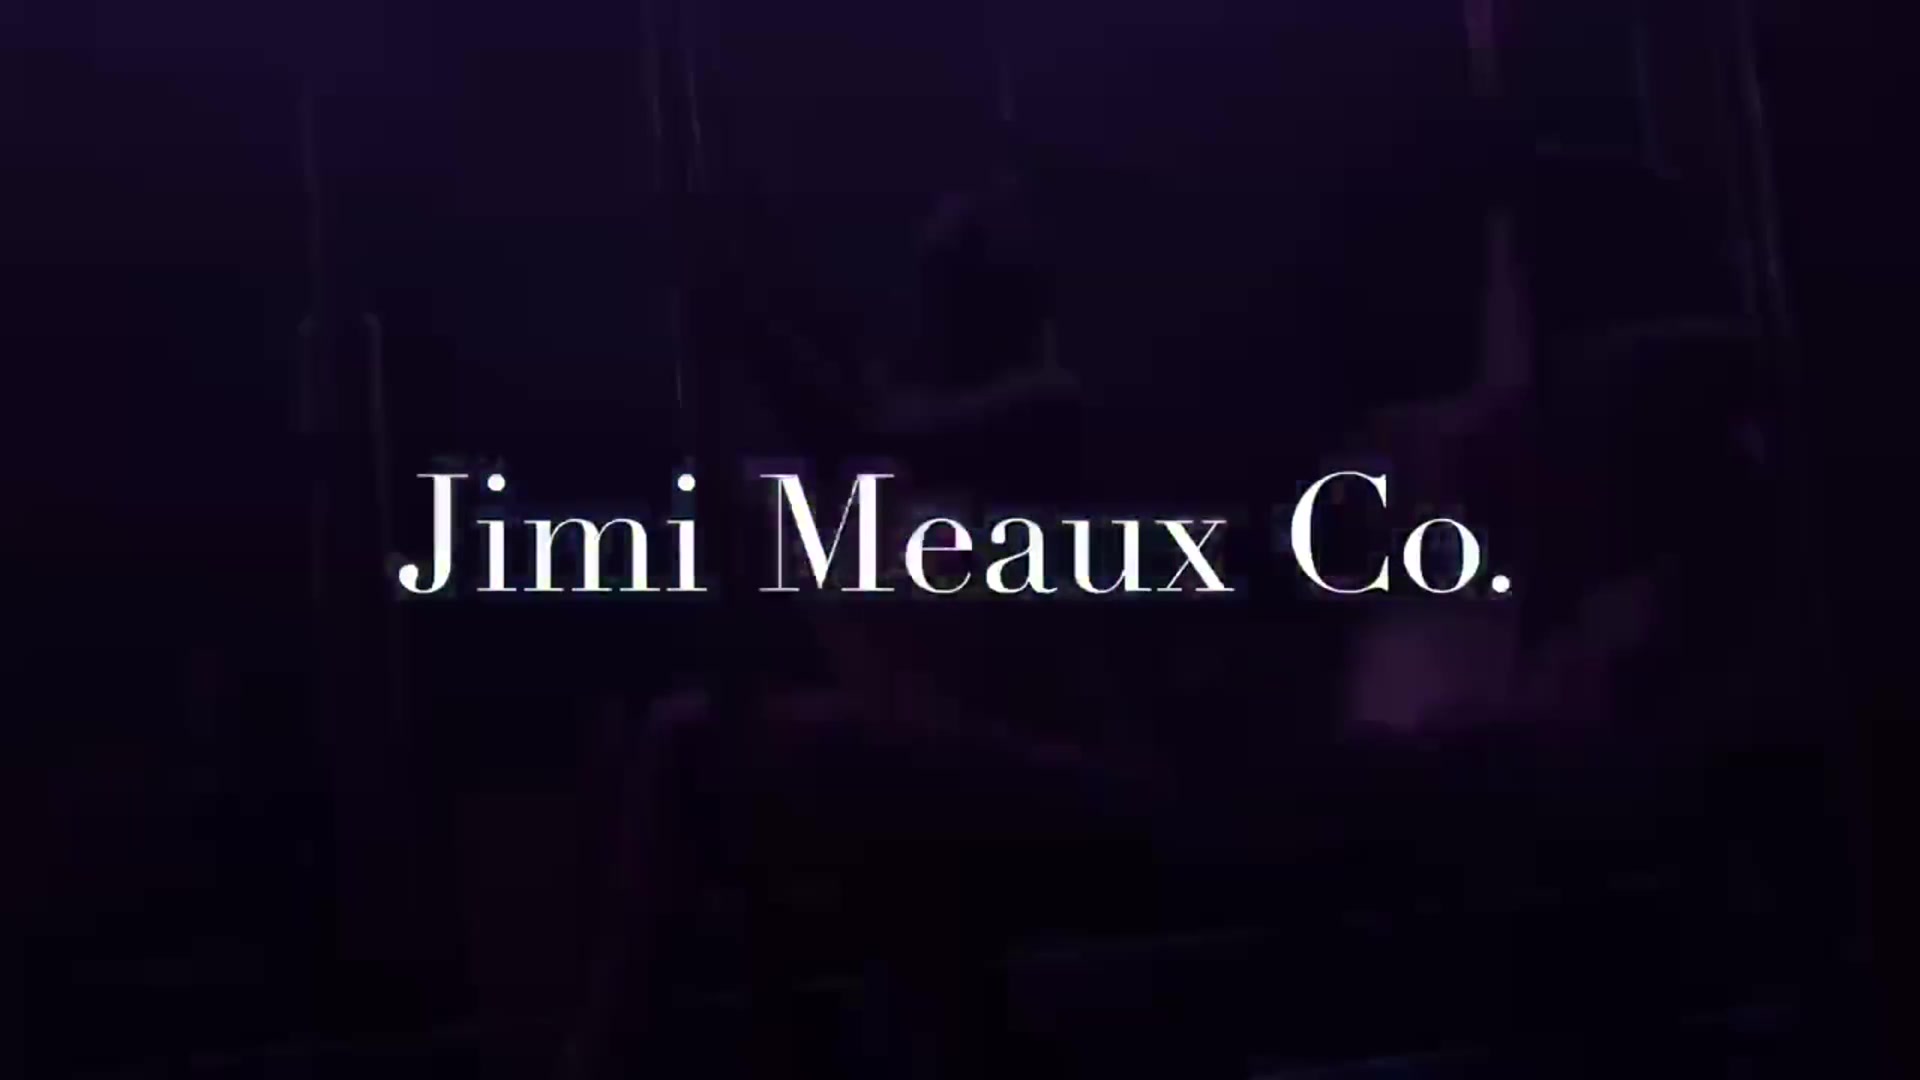 1:45 , 8:05 nip - Jimi Meaux Nude Video on YouTube.